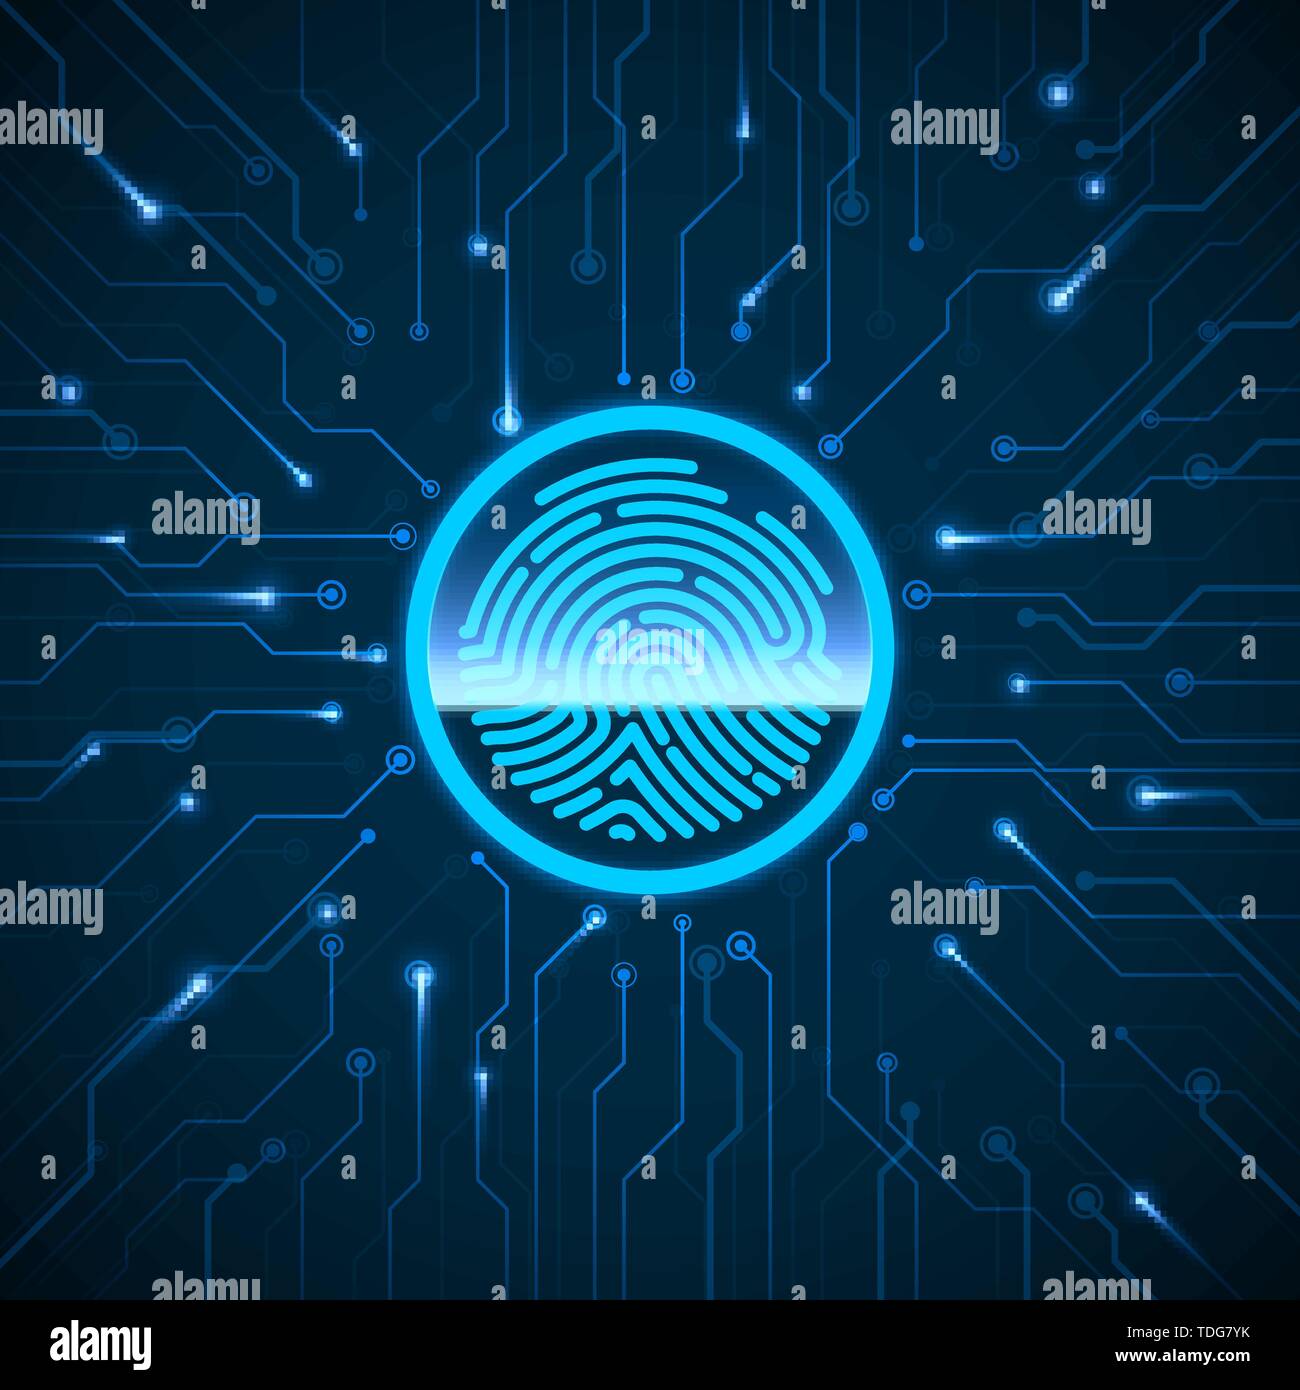 Cyber Security. Scannen von Fingerabdrücken Identification System. Fingerabdrücke gescannt. Biometrischer Autorisierung und Sicherheitskonzept. Vektor illu Stock Vektor